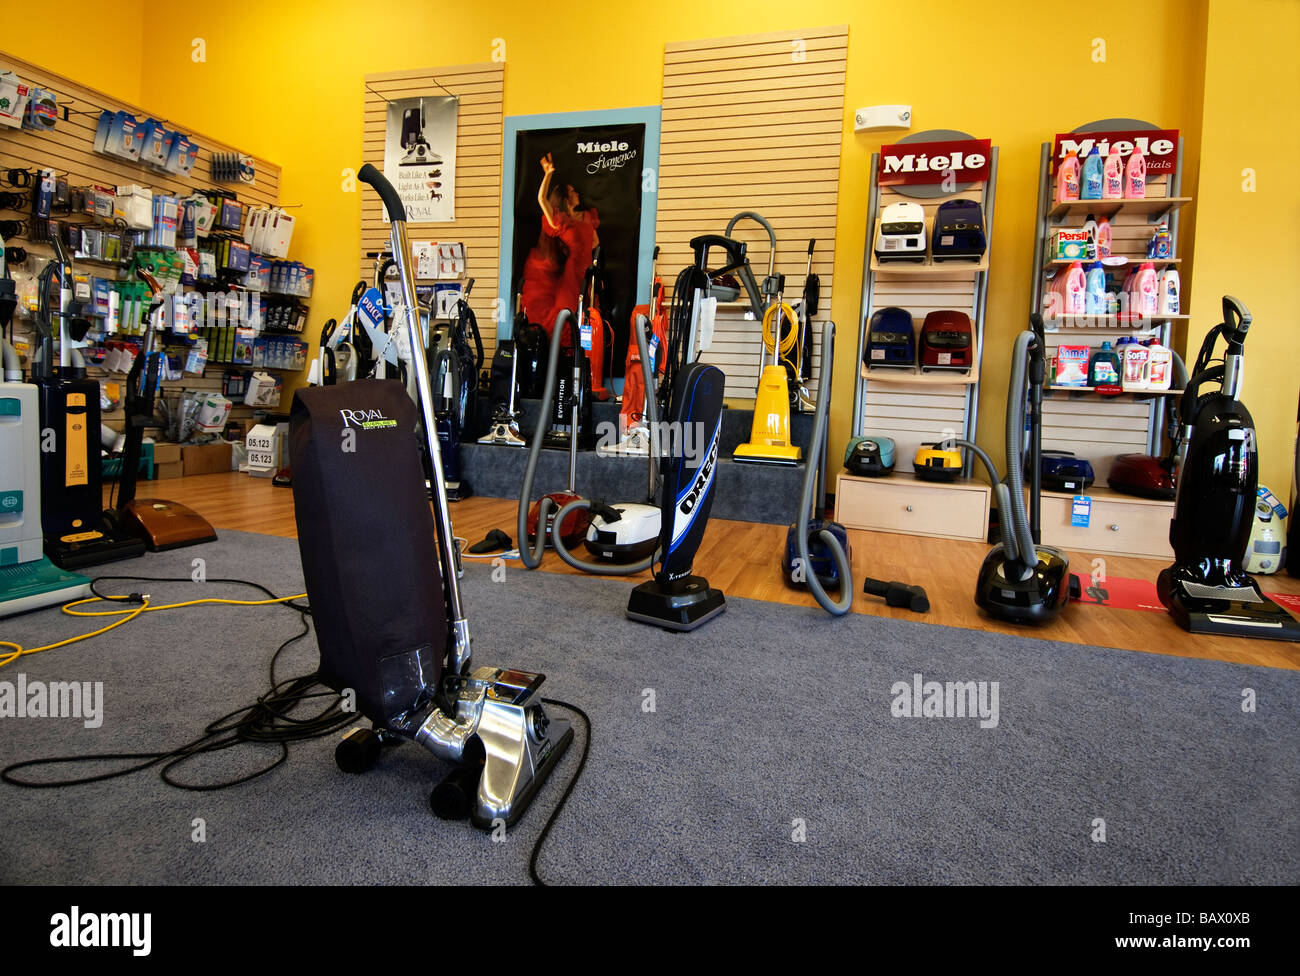 Vacuum Cleaner Store Royal & repair shop Stock Photo - Alamy